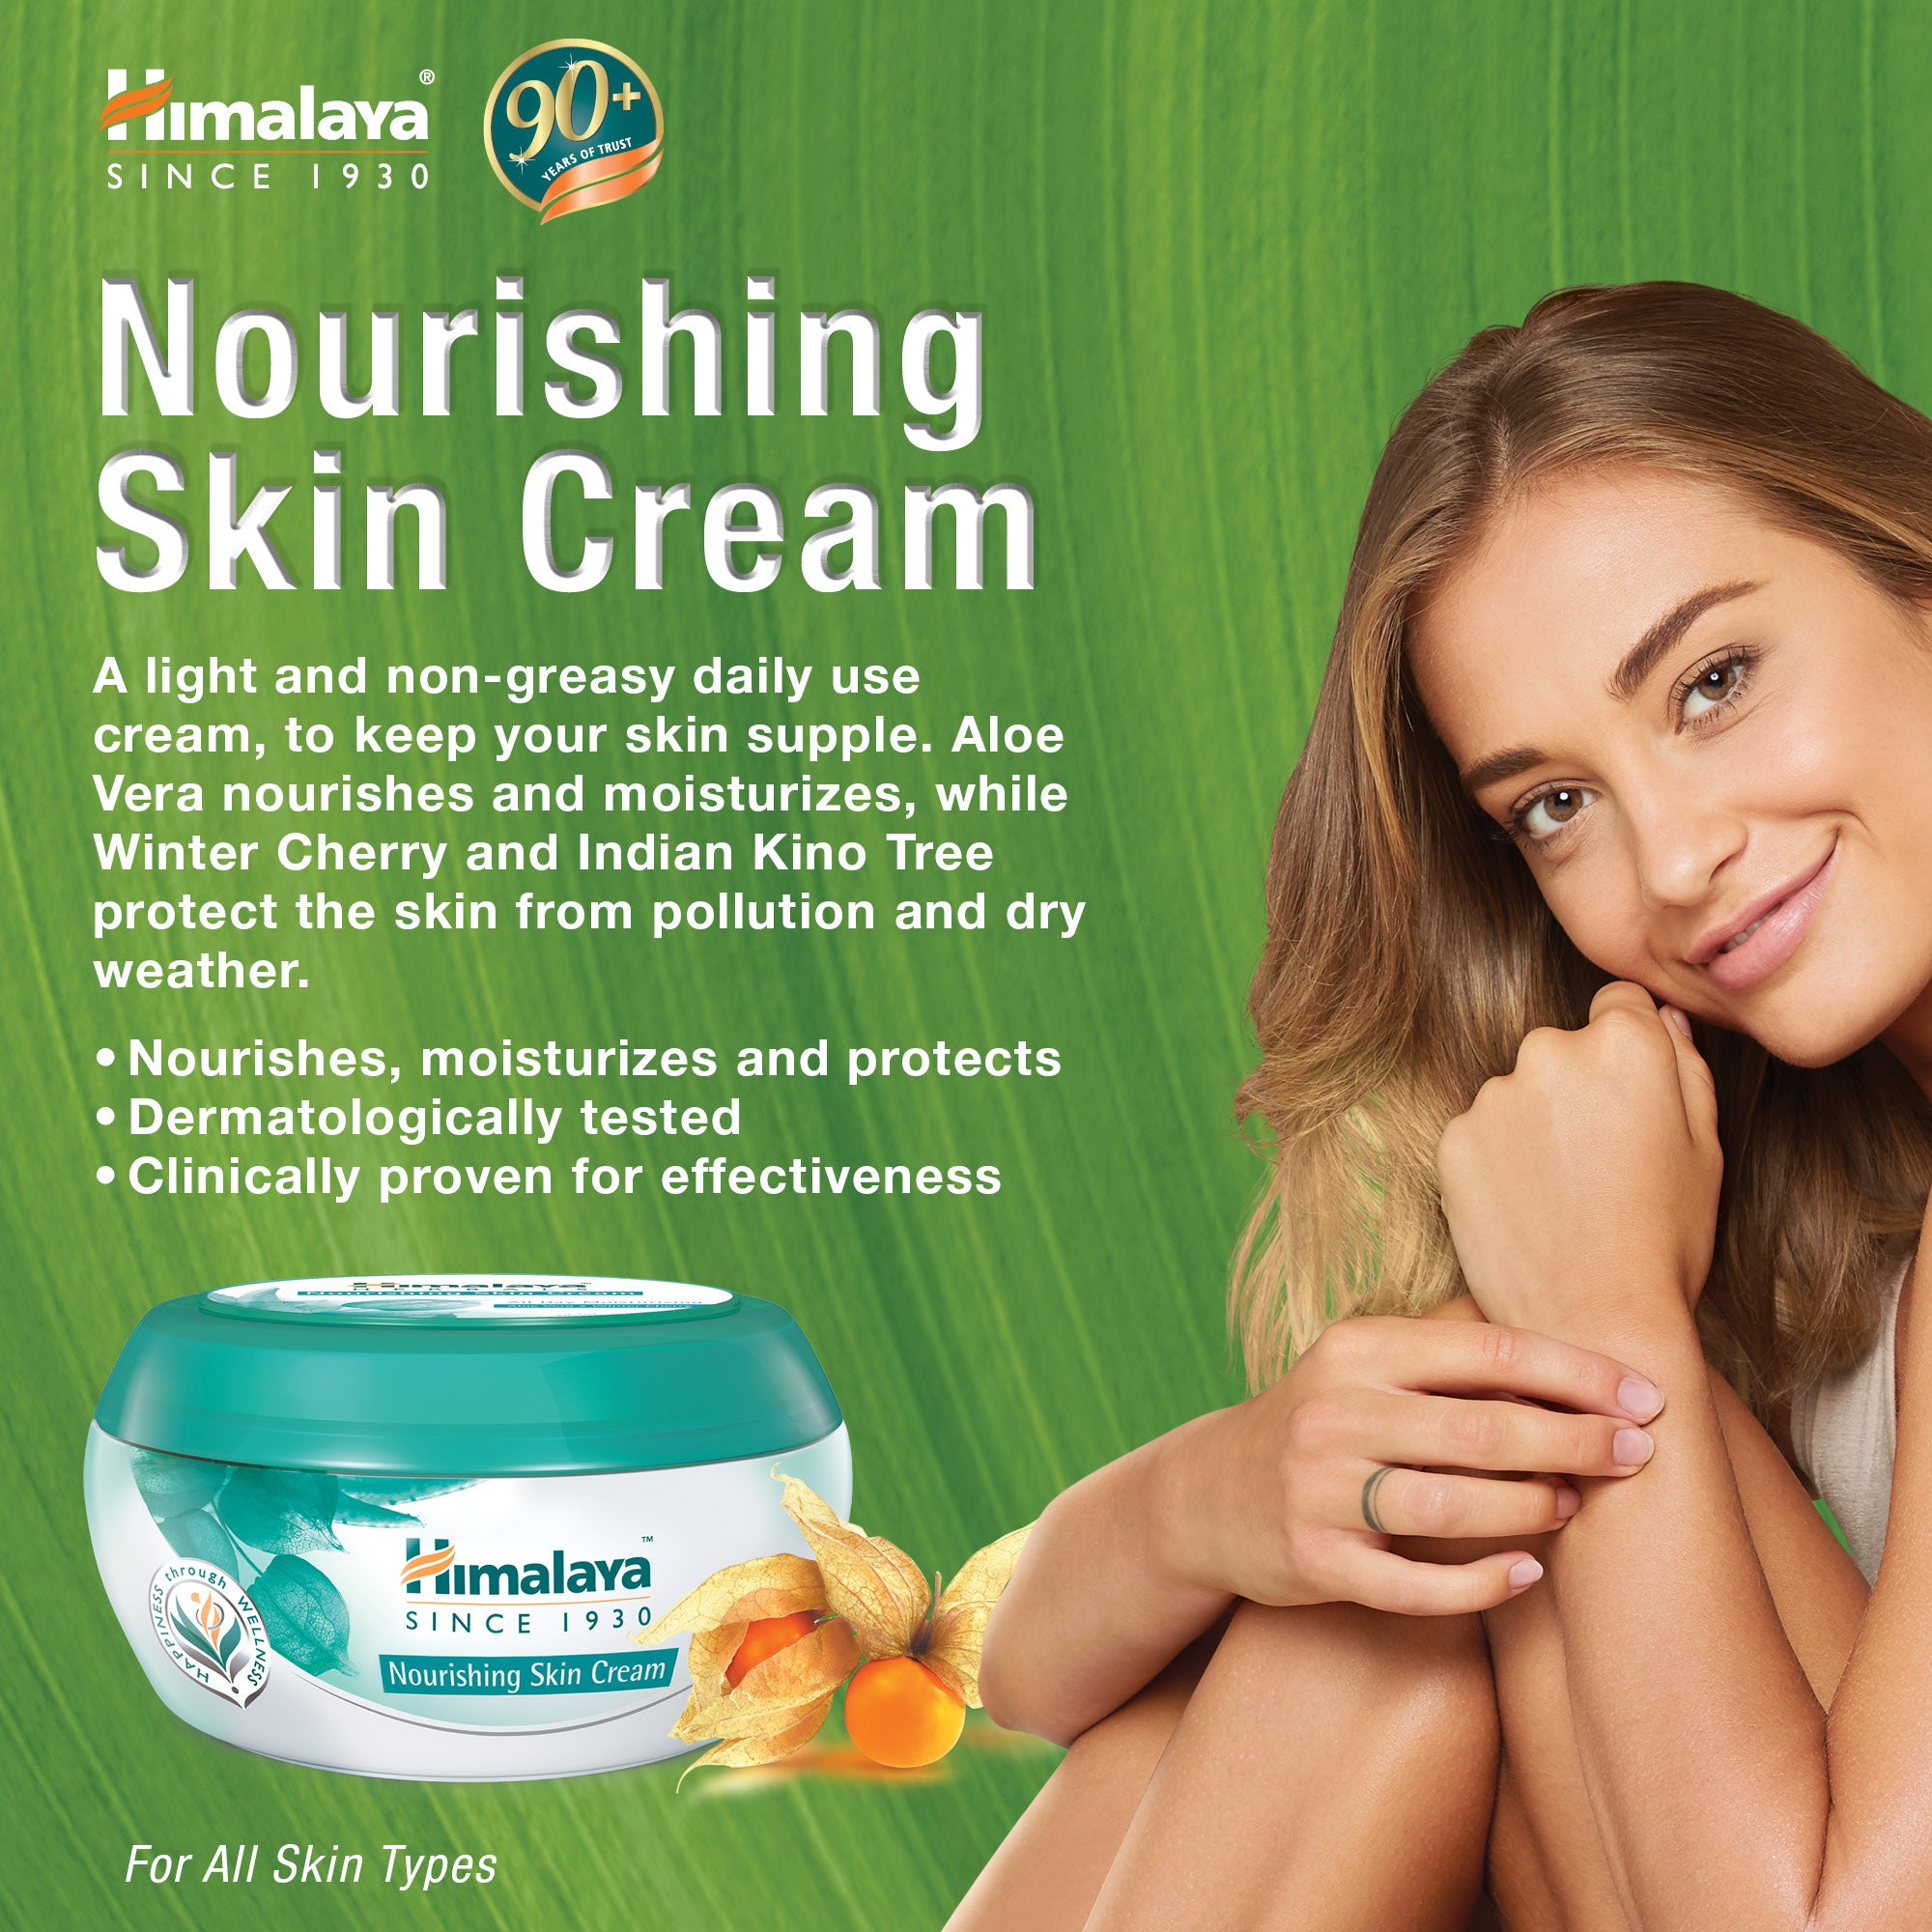 Himalaya Nourishing Skin Cream - 150ml (Pack of 2)